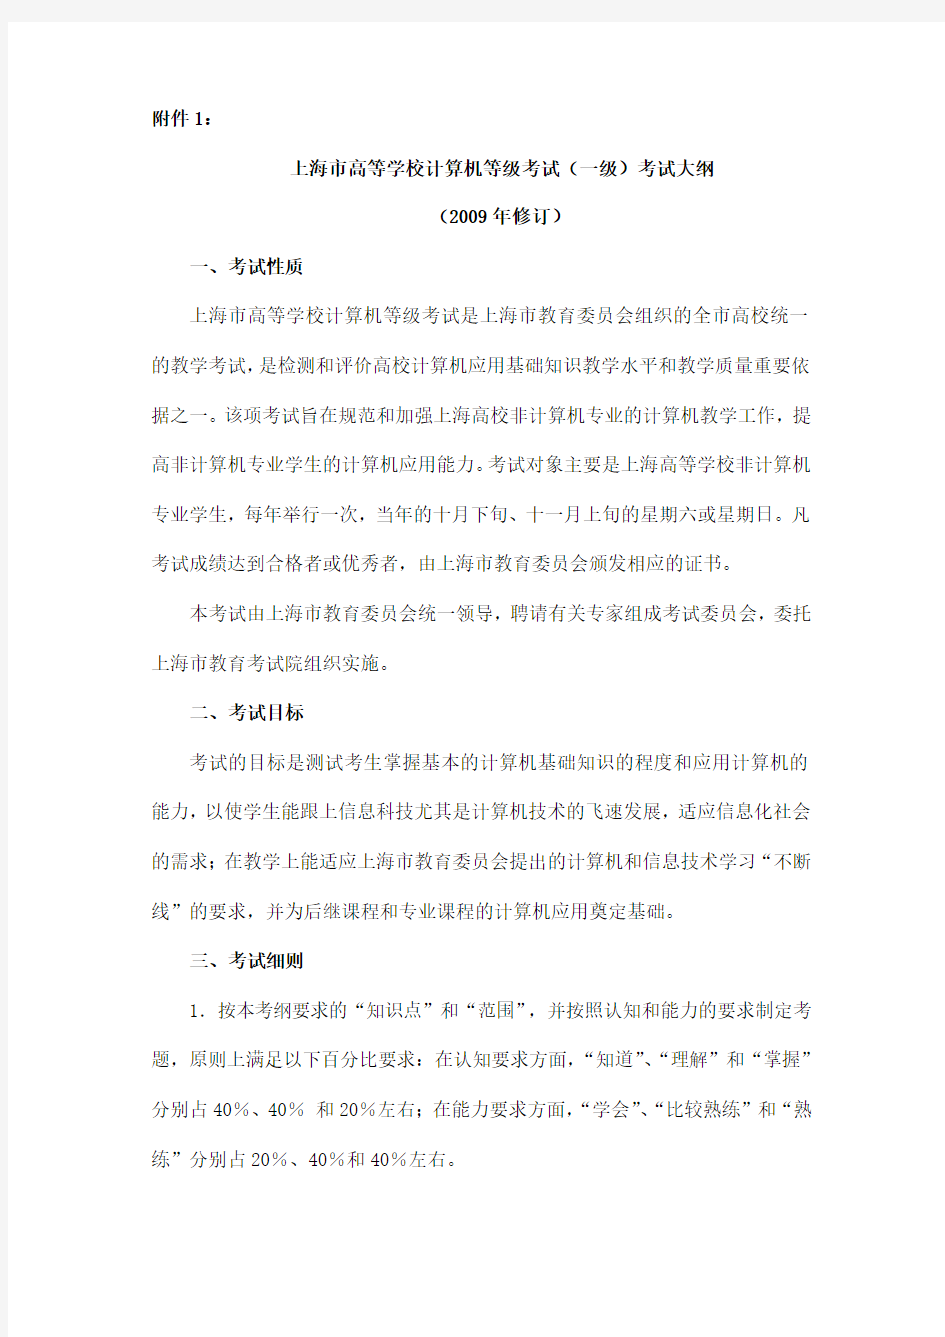 上海市高等学校计算机等级考试(一级)考试大纲